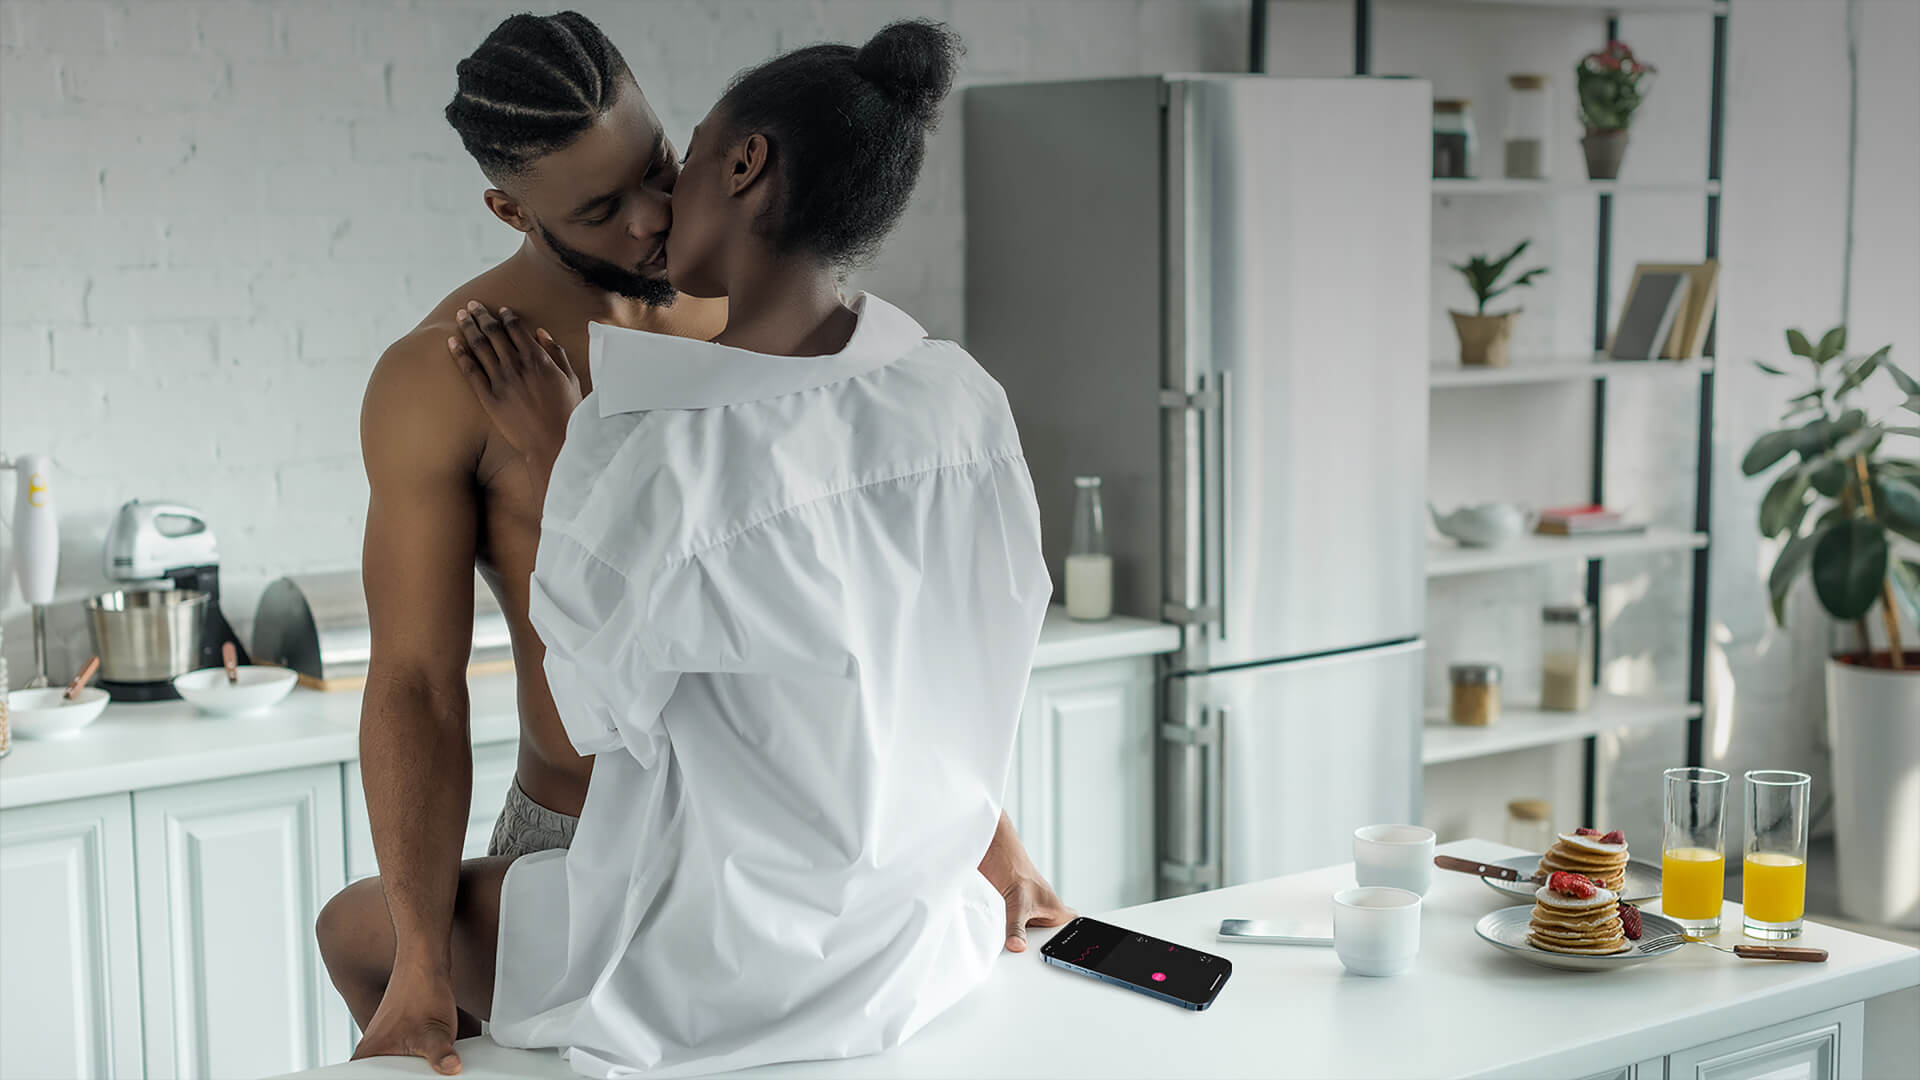 lovense ferri - juegos previos en la cocina - un hombre negro desnudo besándose con una mujer negra con camisa blanca con su mano izquierda controlando su ferri en la aplicación lovense remote